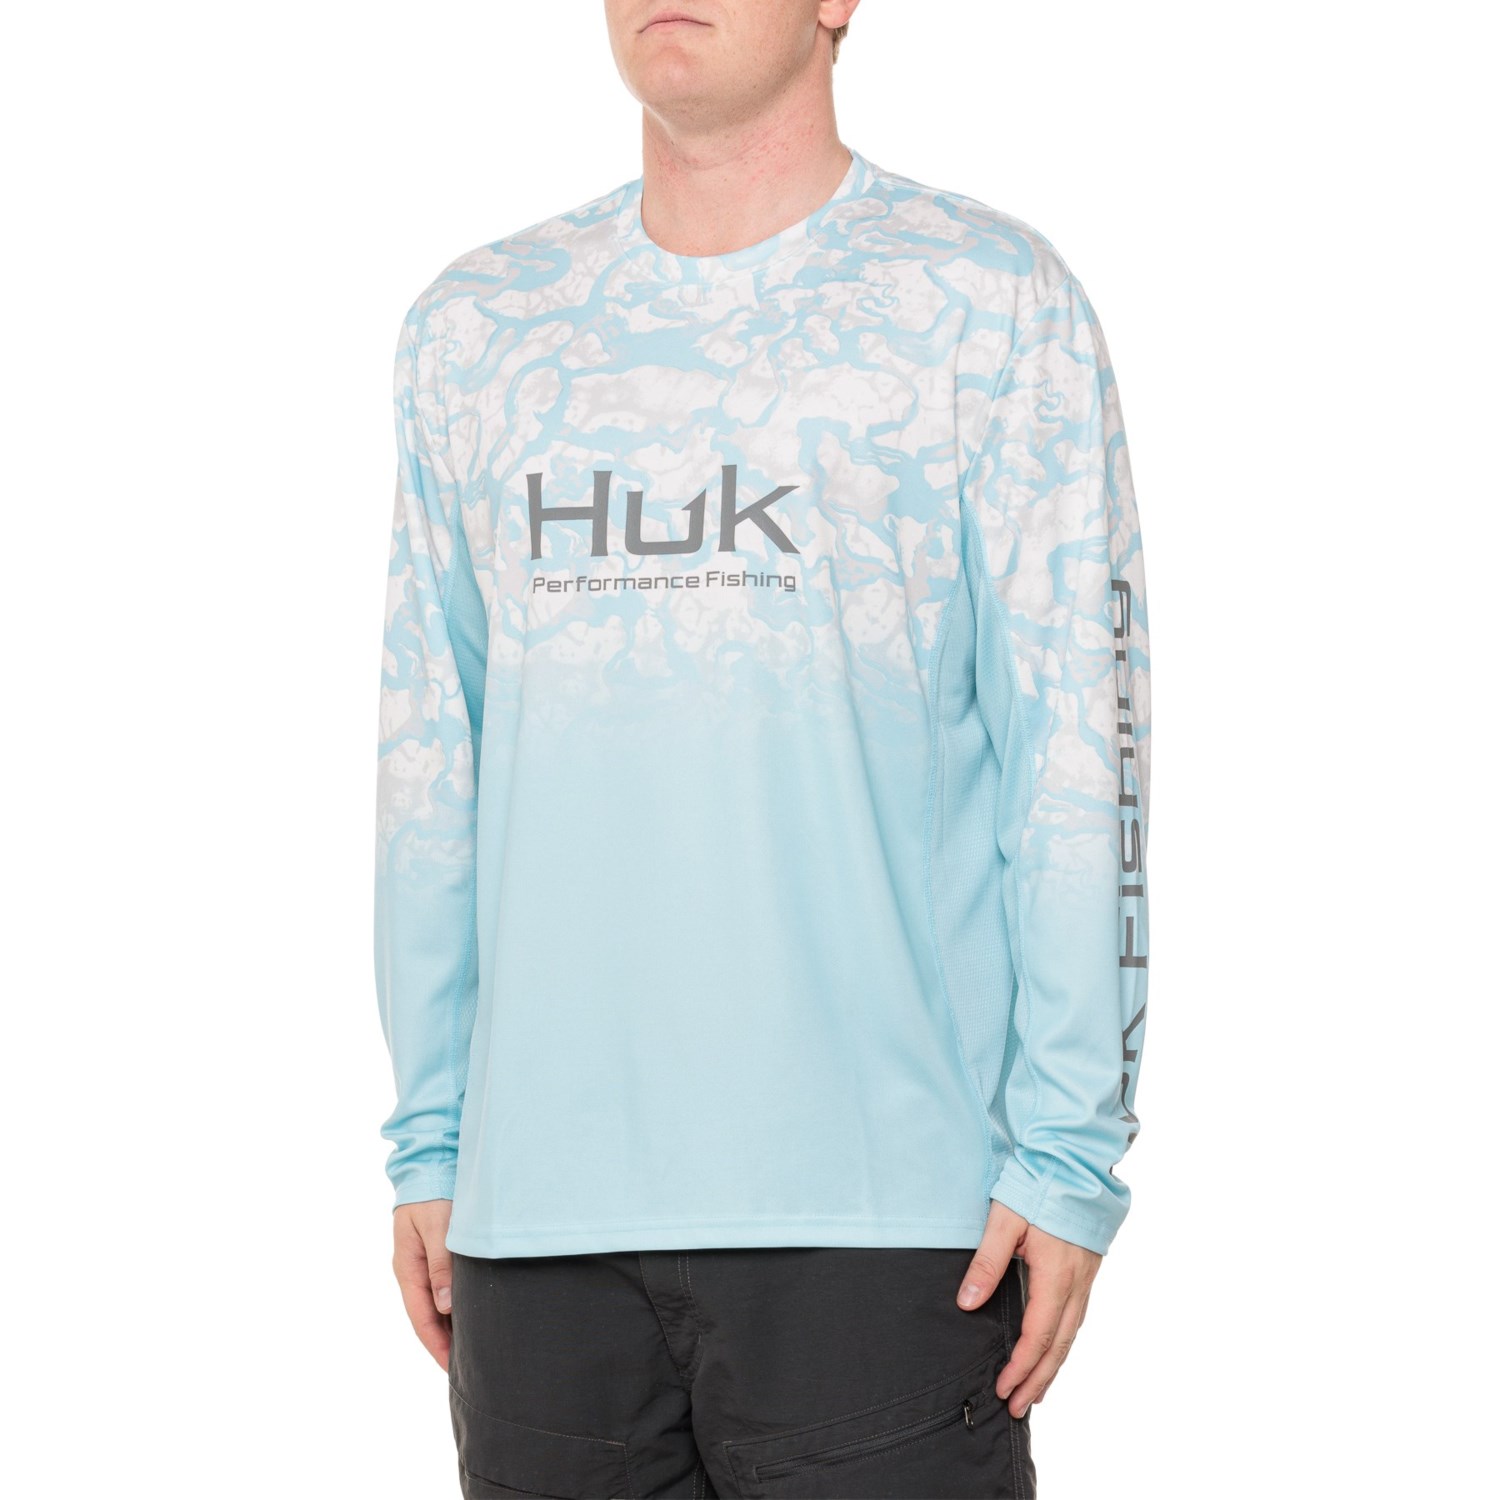 HUK Men Icon X Hoodie Fishing Shirt Sun Protection - Set Sail - XX-Large